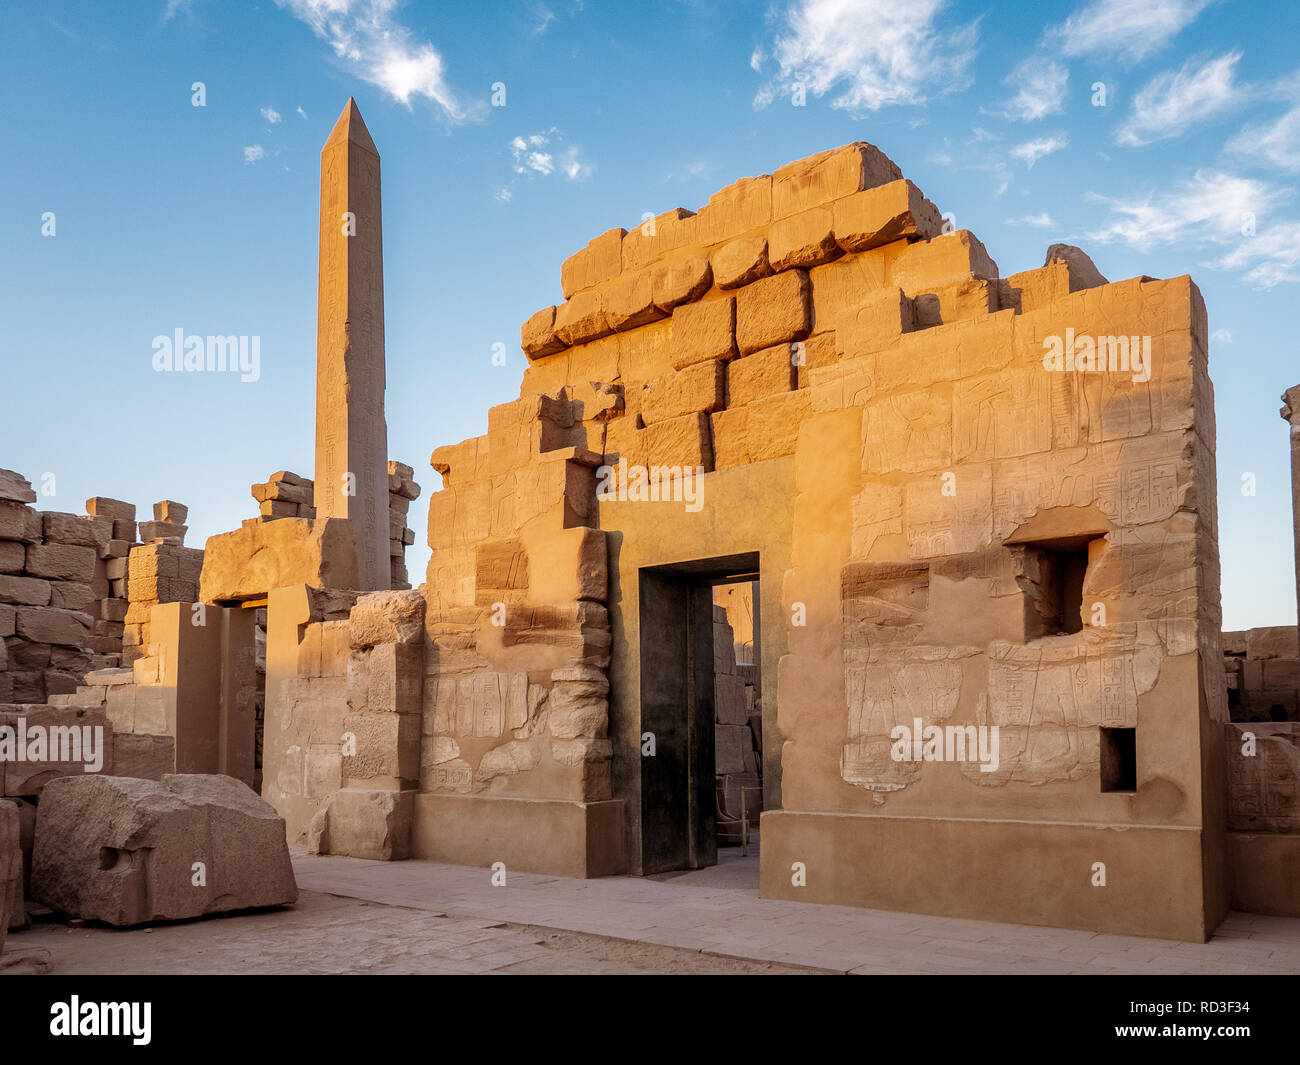 Tempel von Karnak wie Karnak in Luxor mit dem großen Obelisken und antiken Hieroglyphen auf dem Stein Mauern bekannt Stockfoto